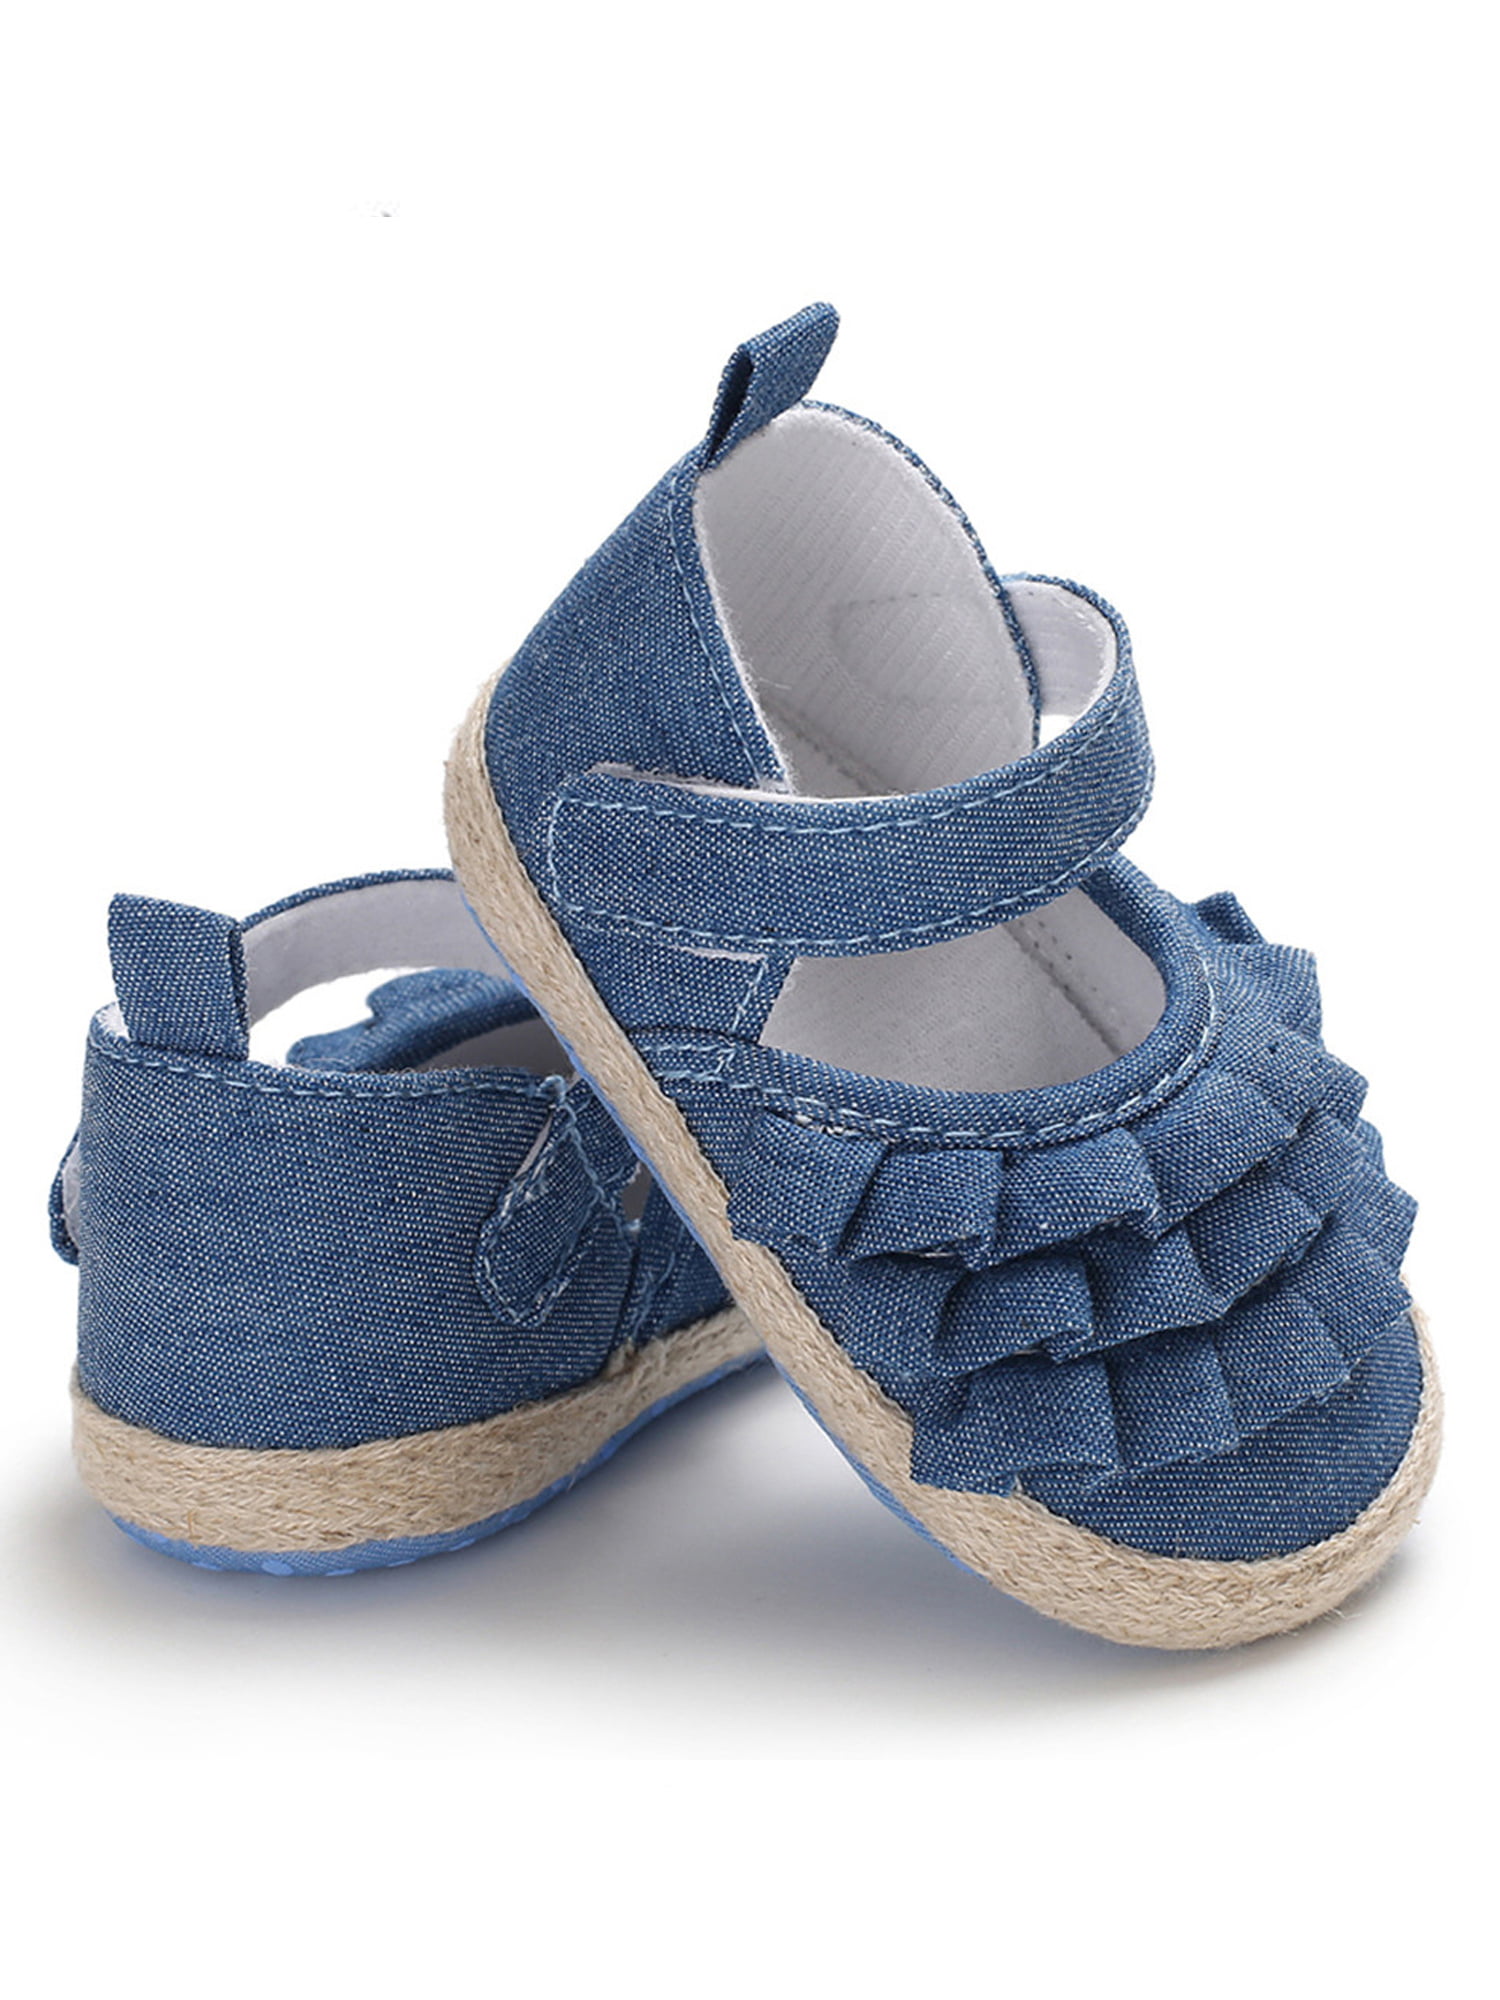 Hirigin Baby Girl Non-Slip Baby Shoes 